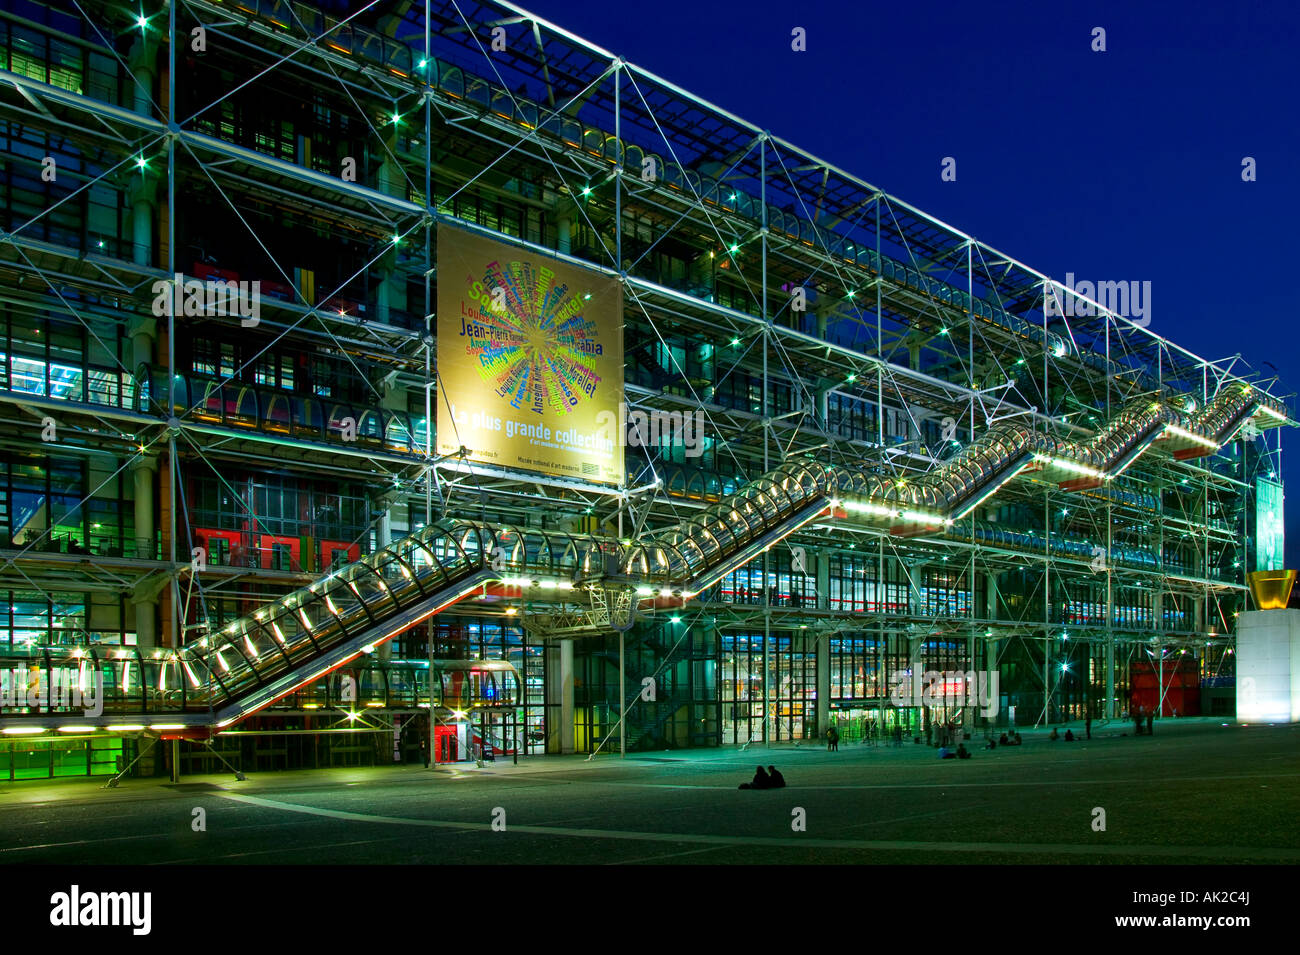 Georges Pompidou museum - Place Beaubourg - Paris - France Stock Photo